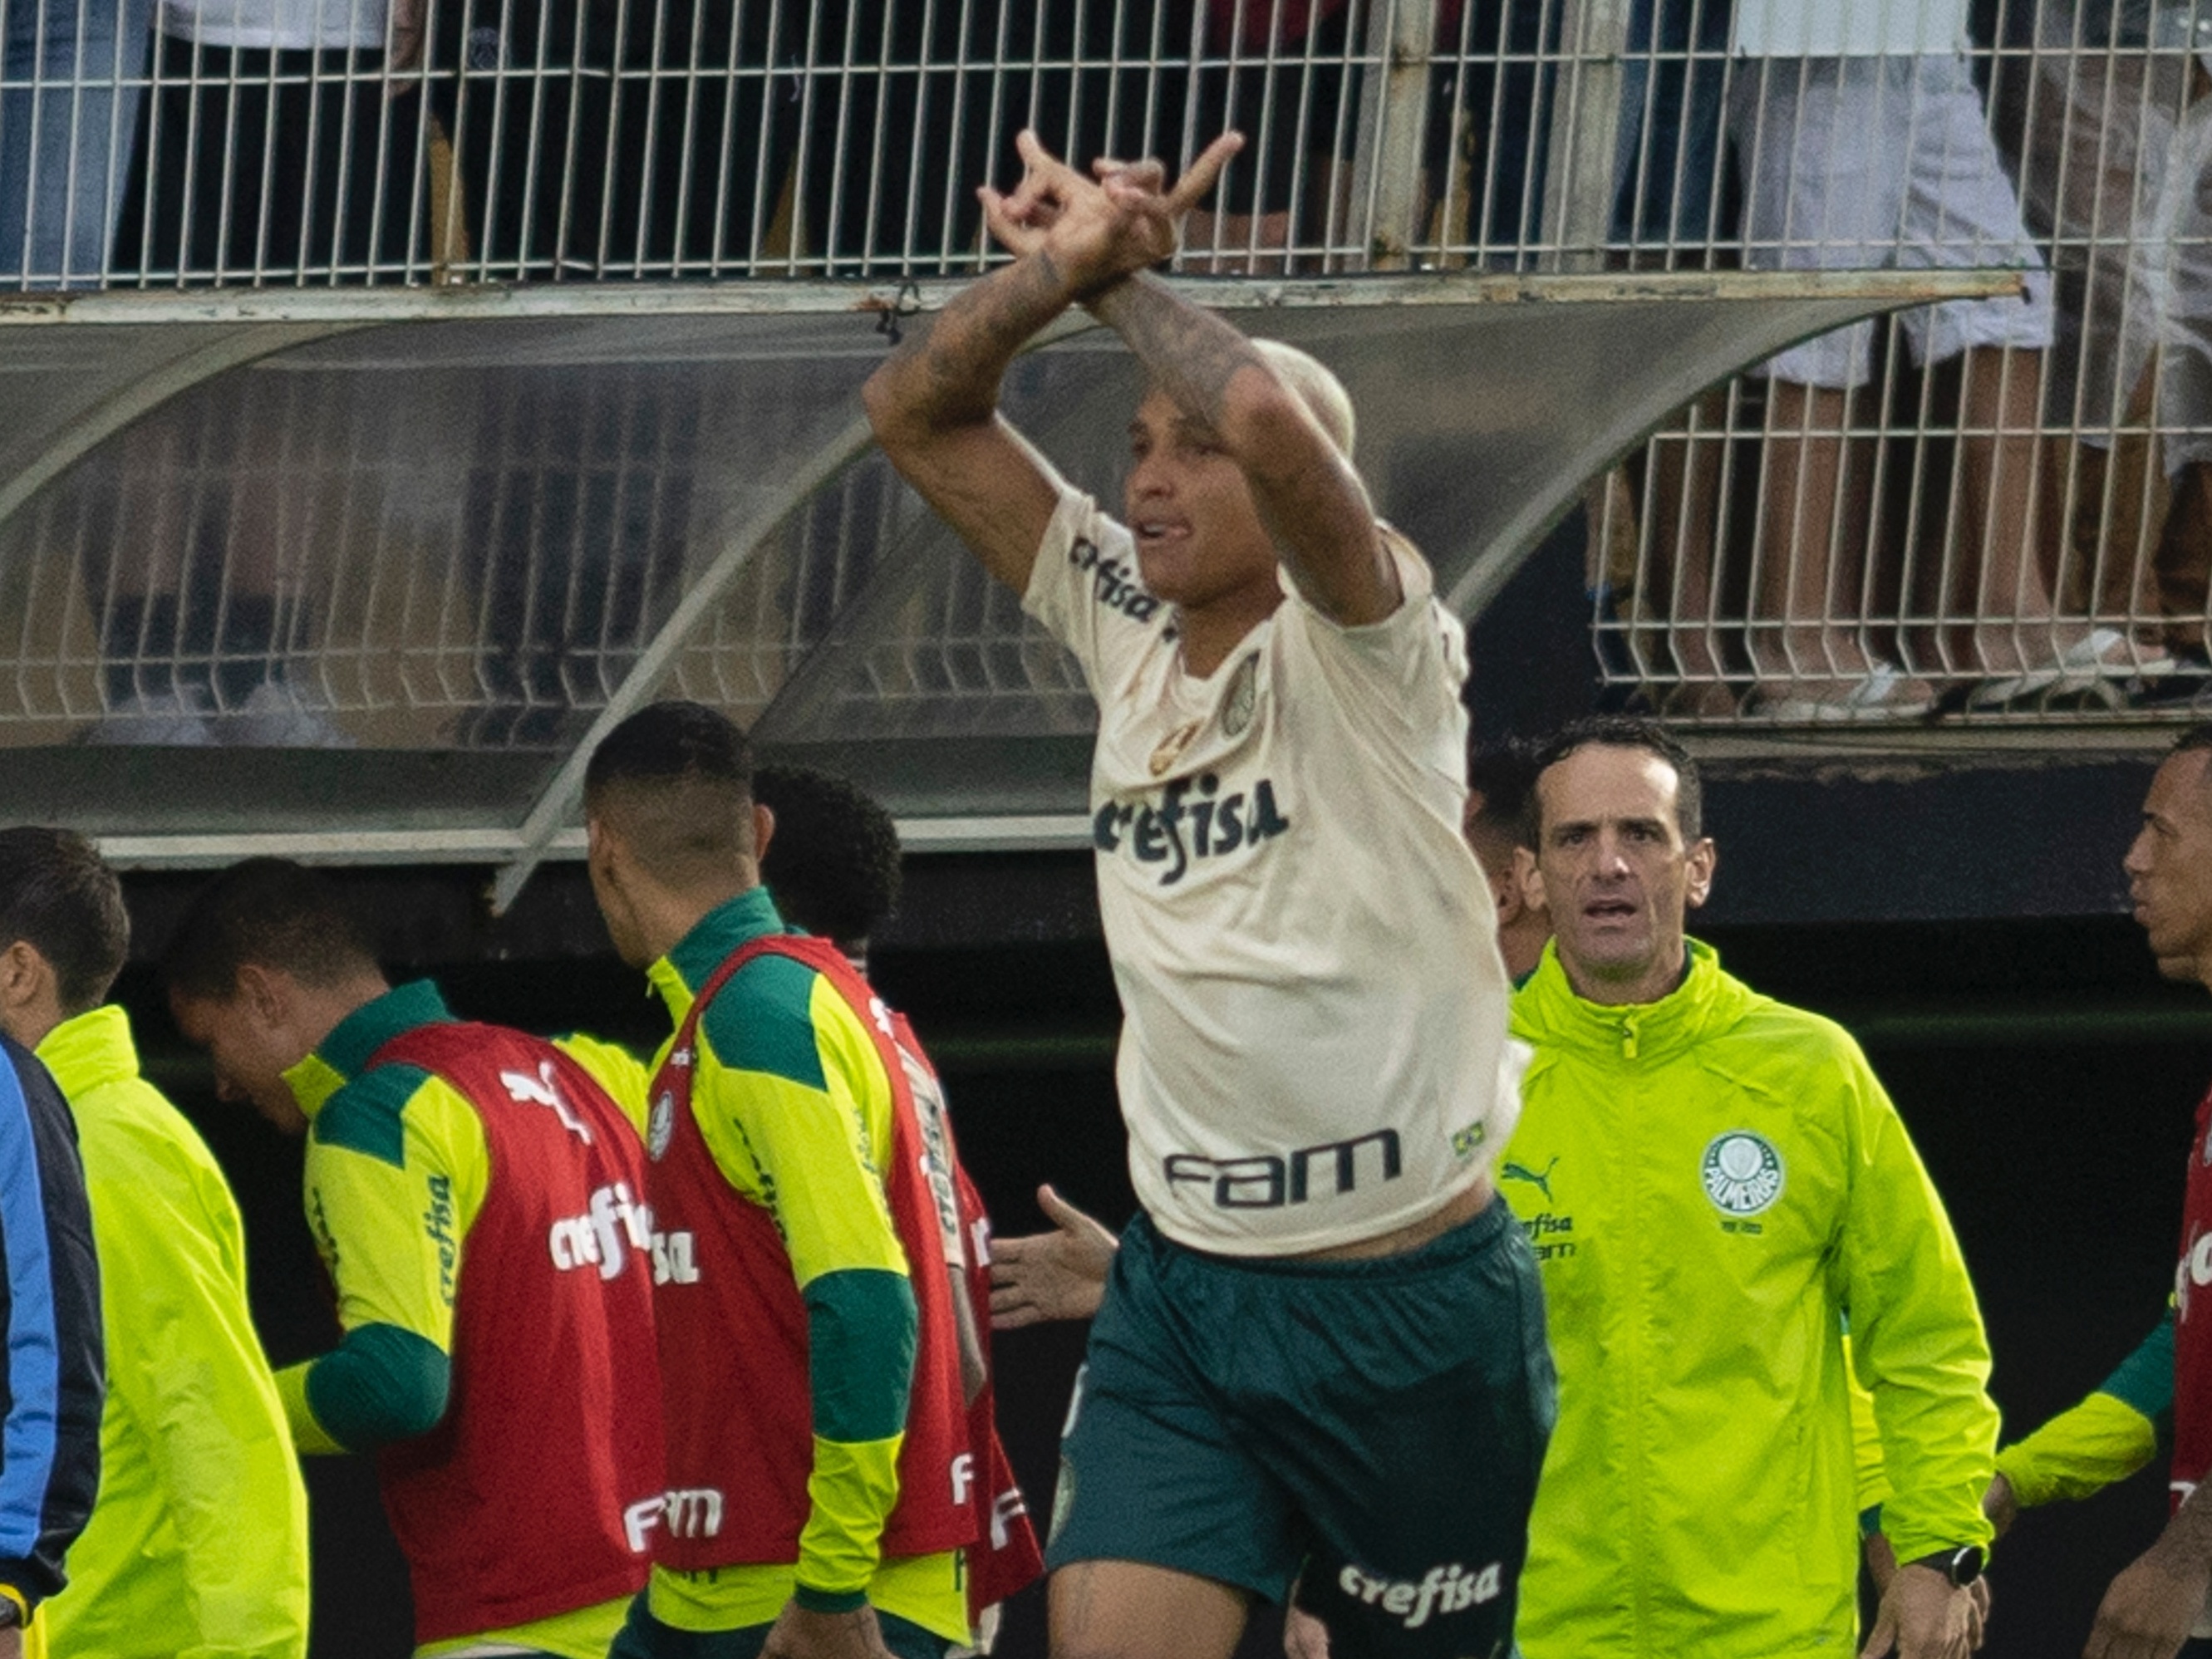 Não foi a primeira vez: relembre outra goleada do Bragantino sobre o  Flamengo, bragantino